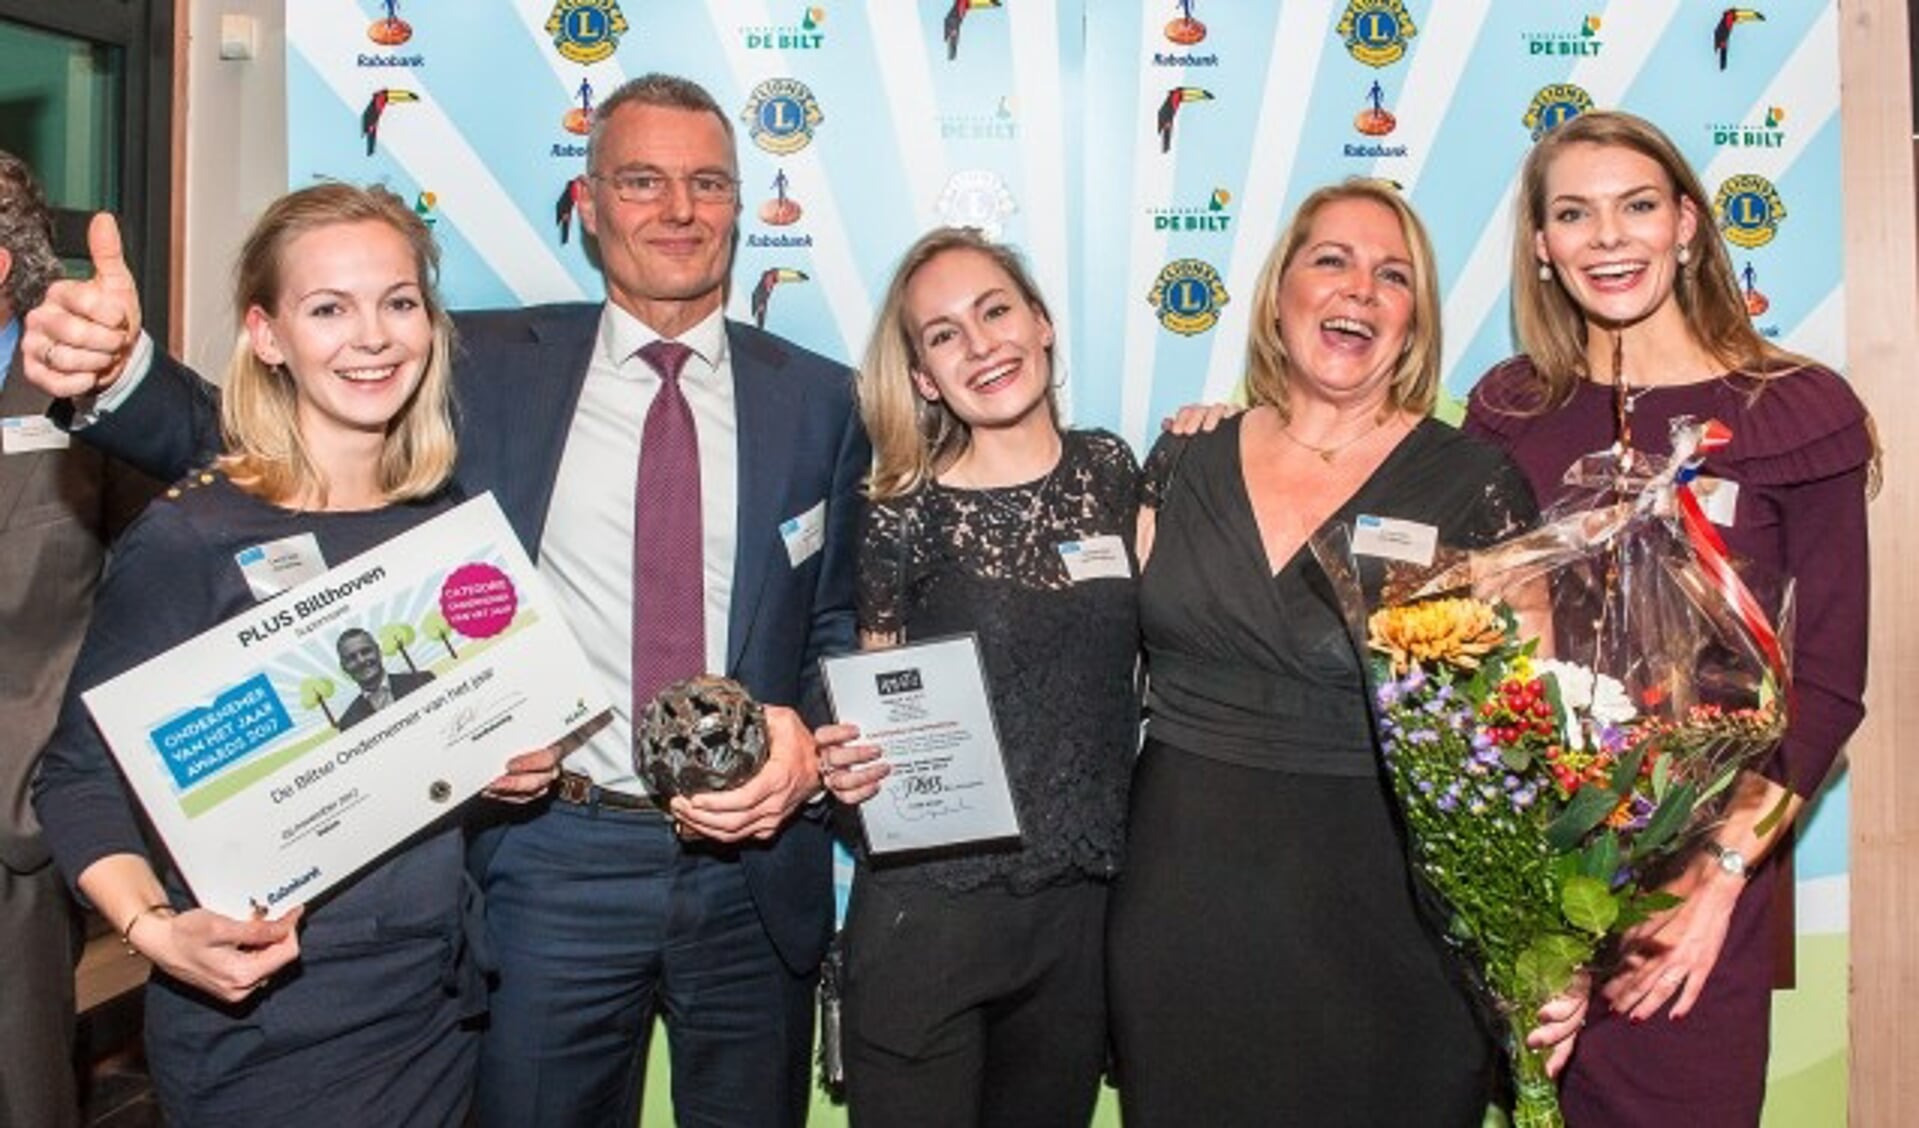 Gert Smit van de Plus Supermarkt Bilthoven is door de jury gekozen tot 'De Biltse Ondernemer van het Jaar'. Op de foto Gert Smit met zijn vrouw en dochters. FOTO: Hans Lebbe